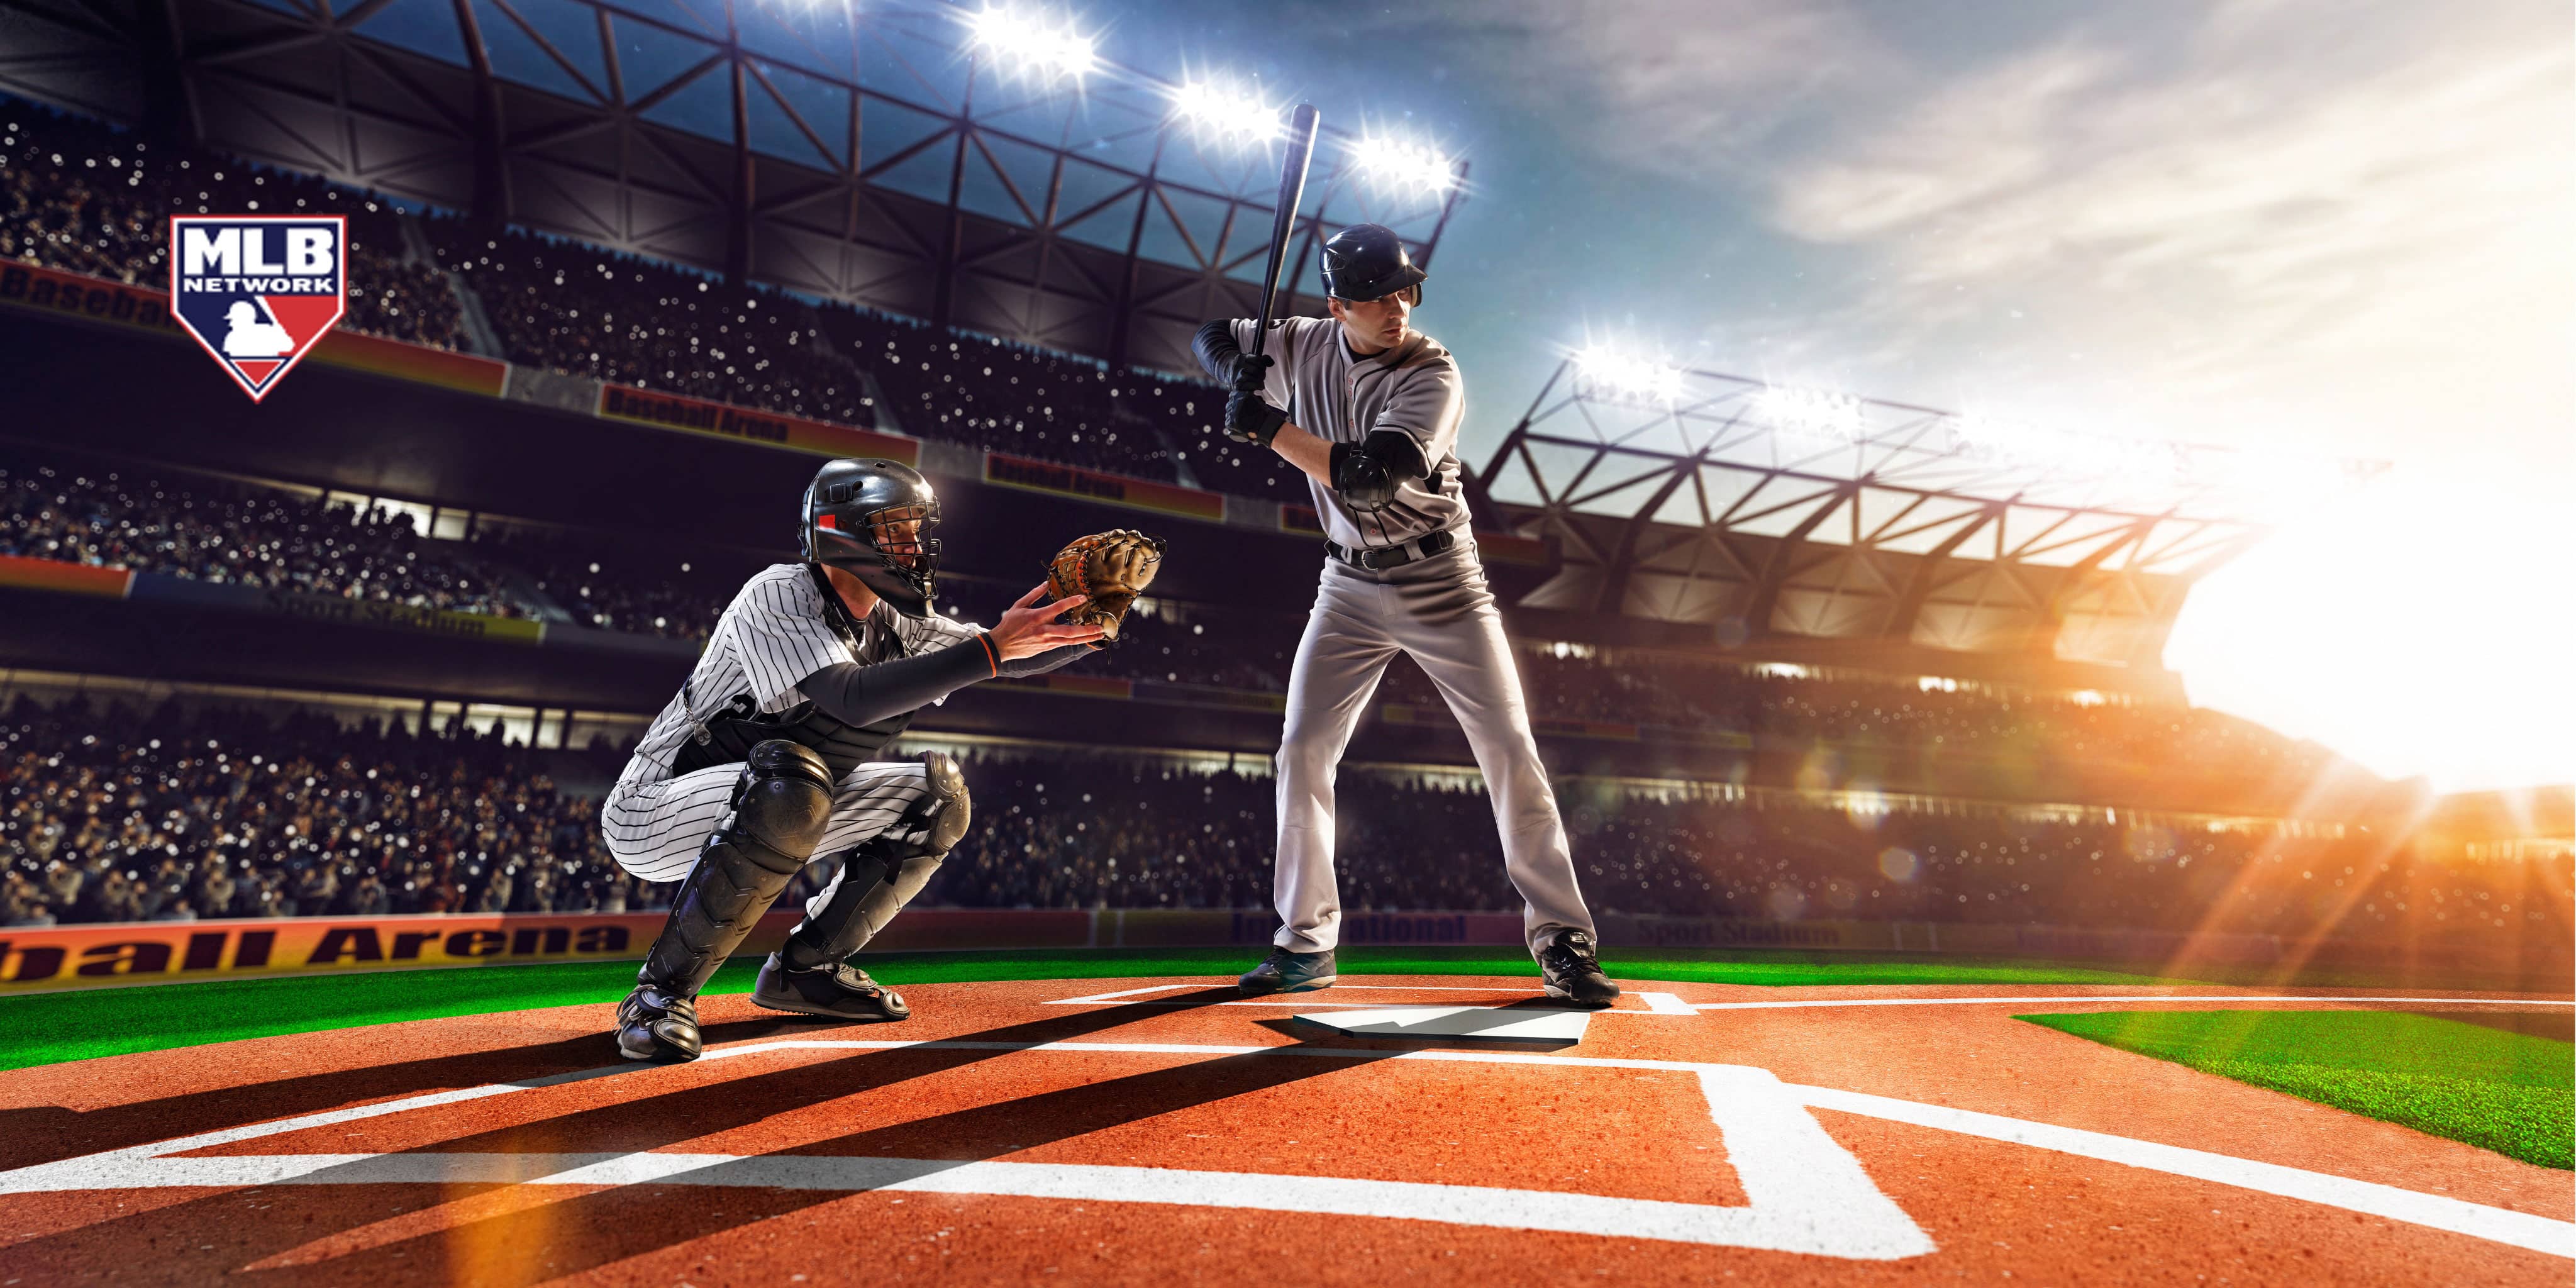 Deportes y paquete de TV: partido de béisbol